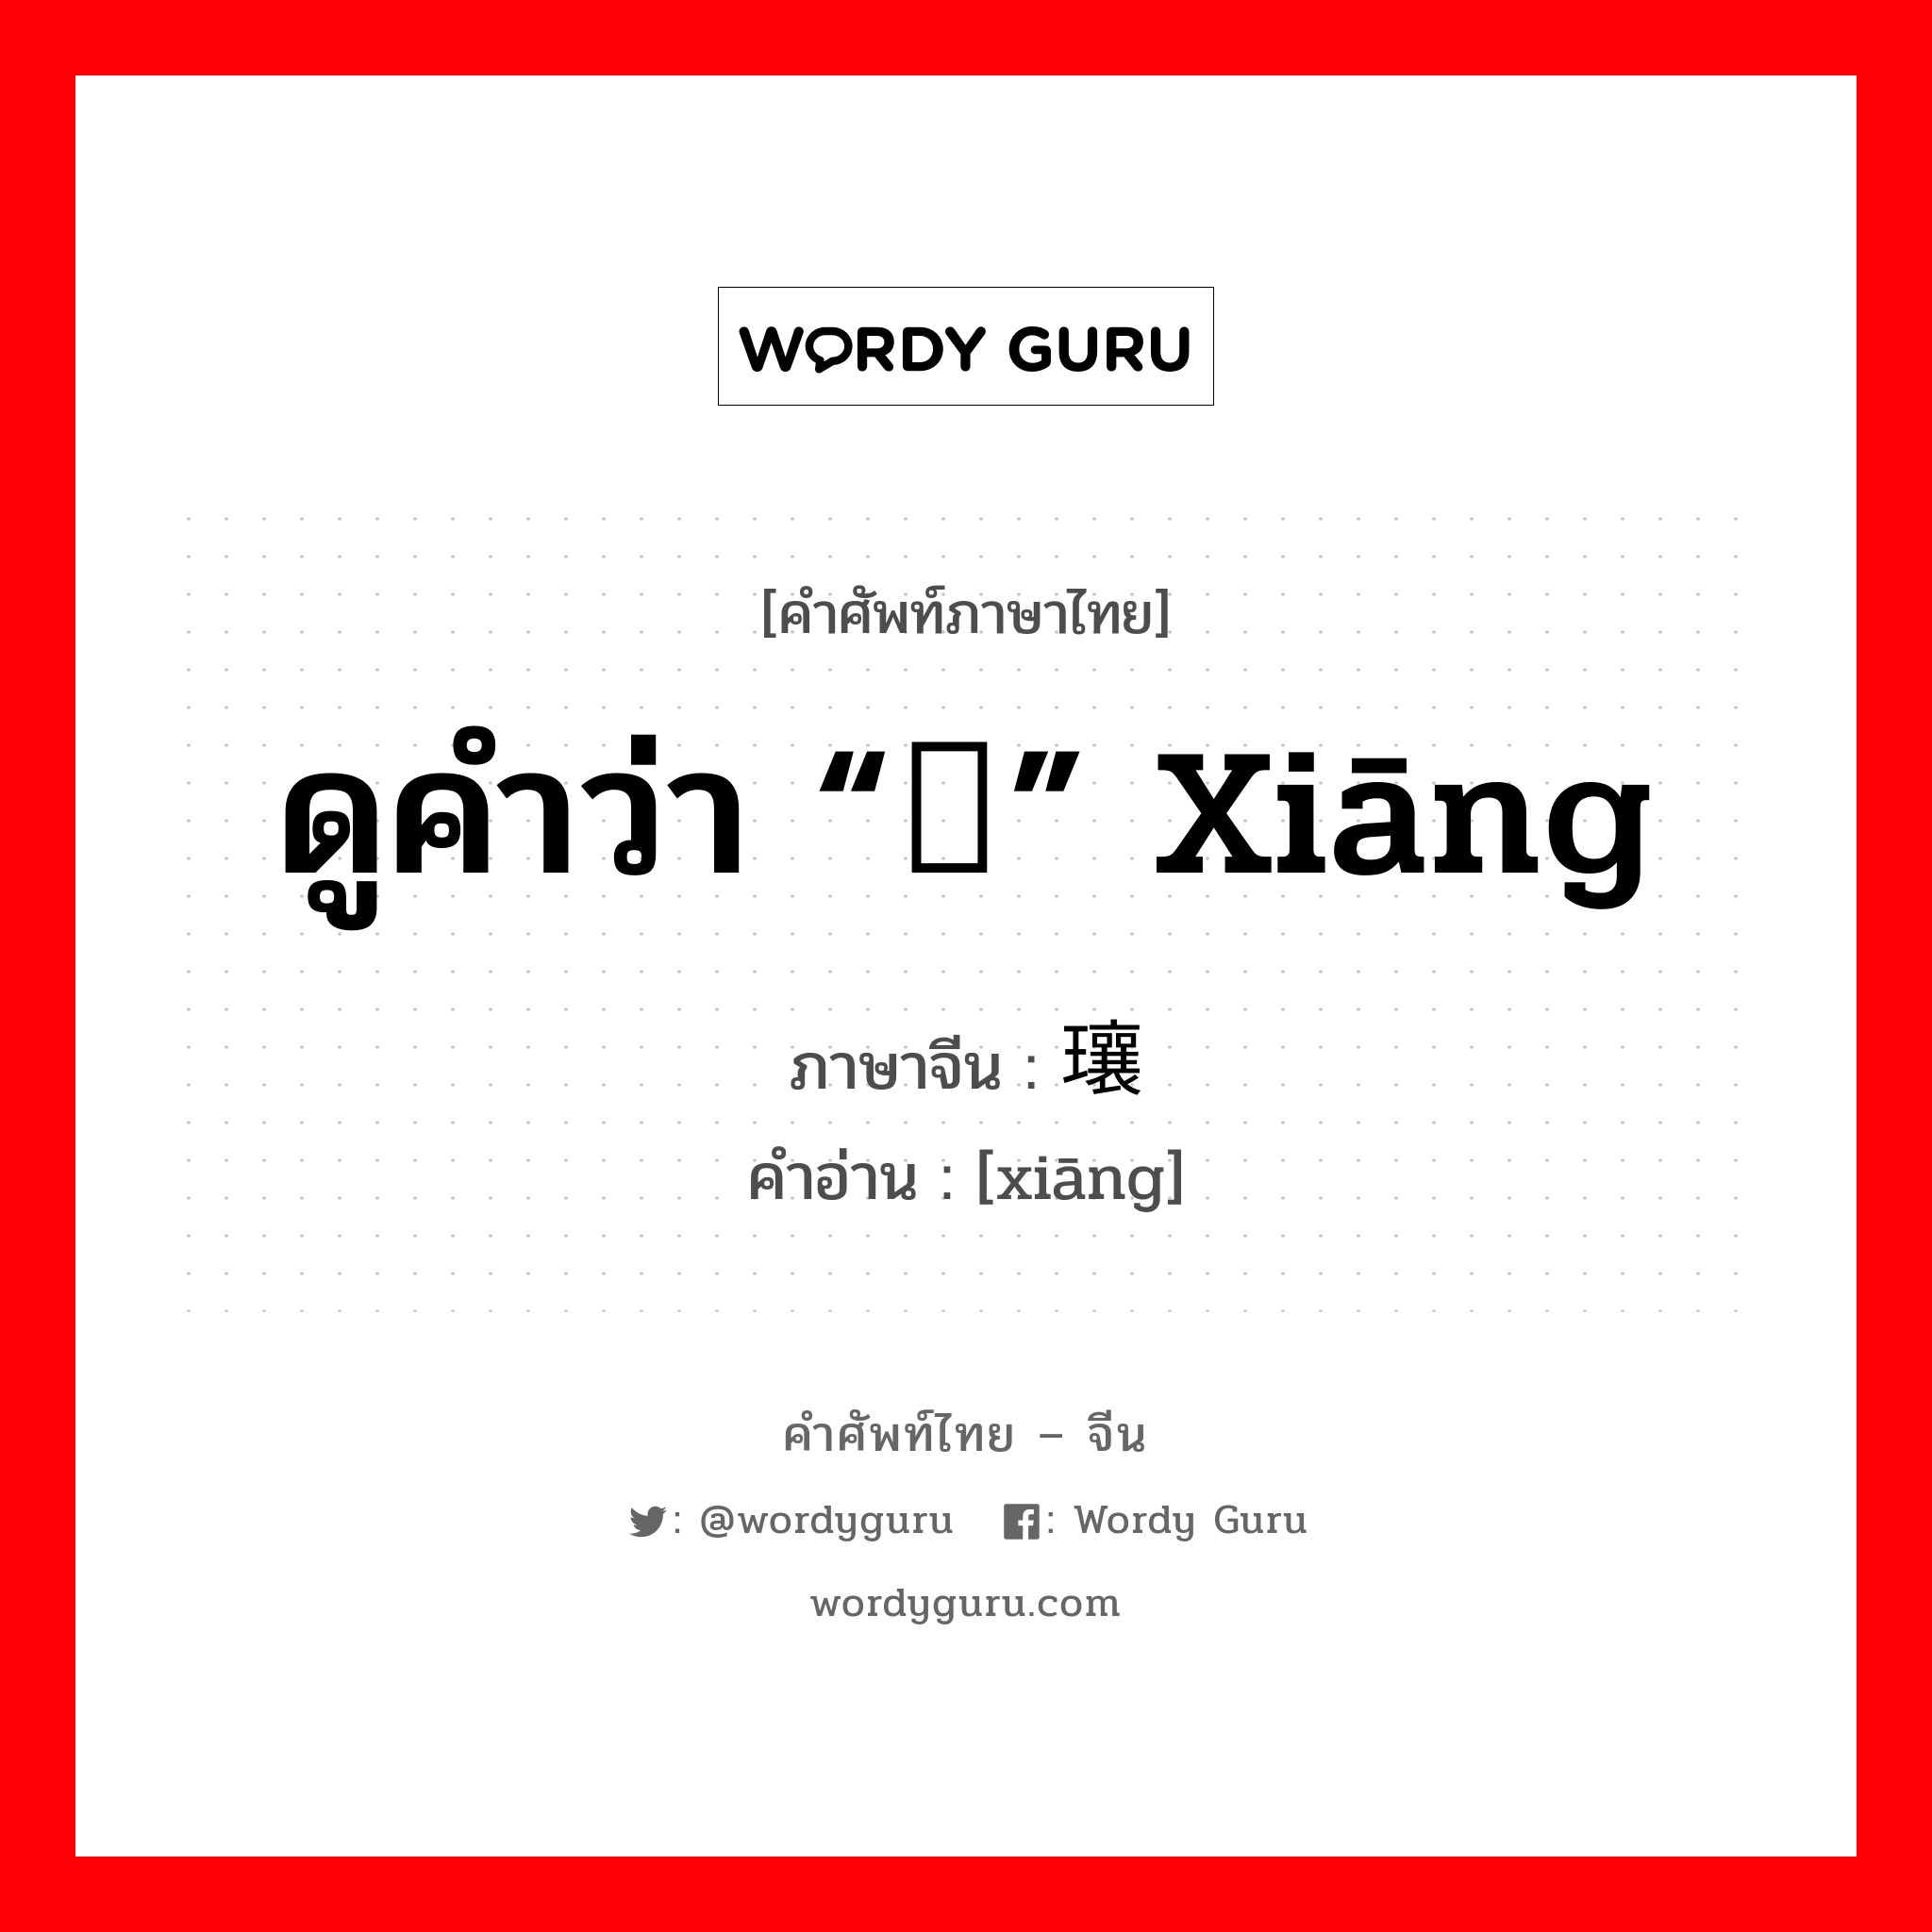 ดูคำว่า “镶” xiāng ภาษาจีนคืออะไร, คำศัพท์ภาษาไทย - จีน ดูคำว่า “镶” xiāng ภาษาจีน 瓖 คำอ่าน [xiāng]